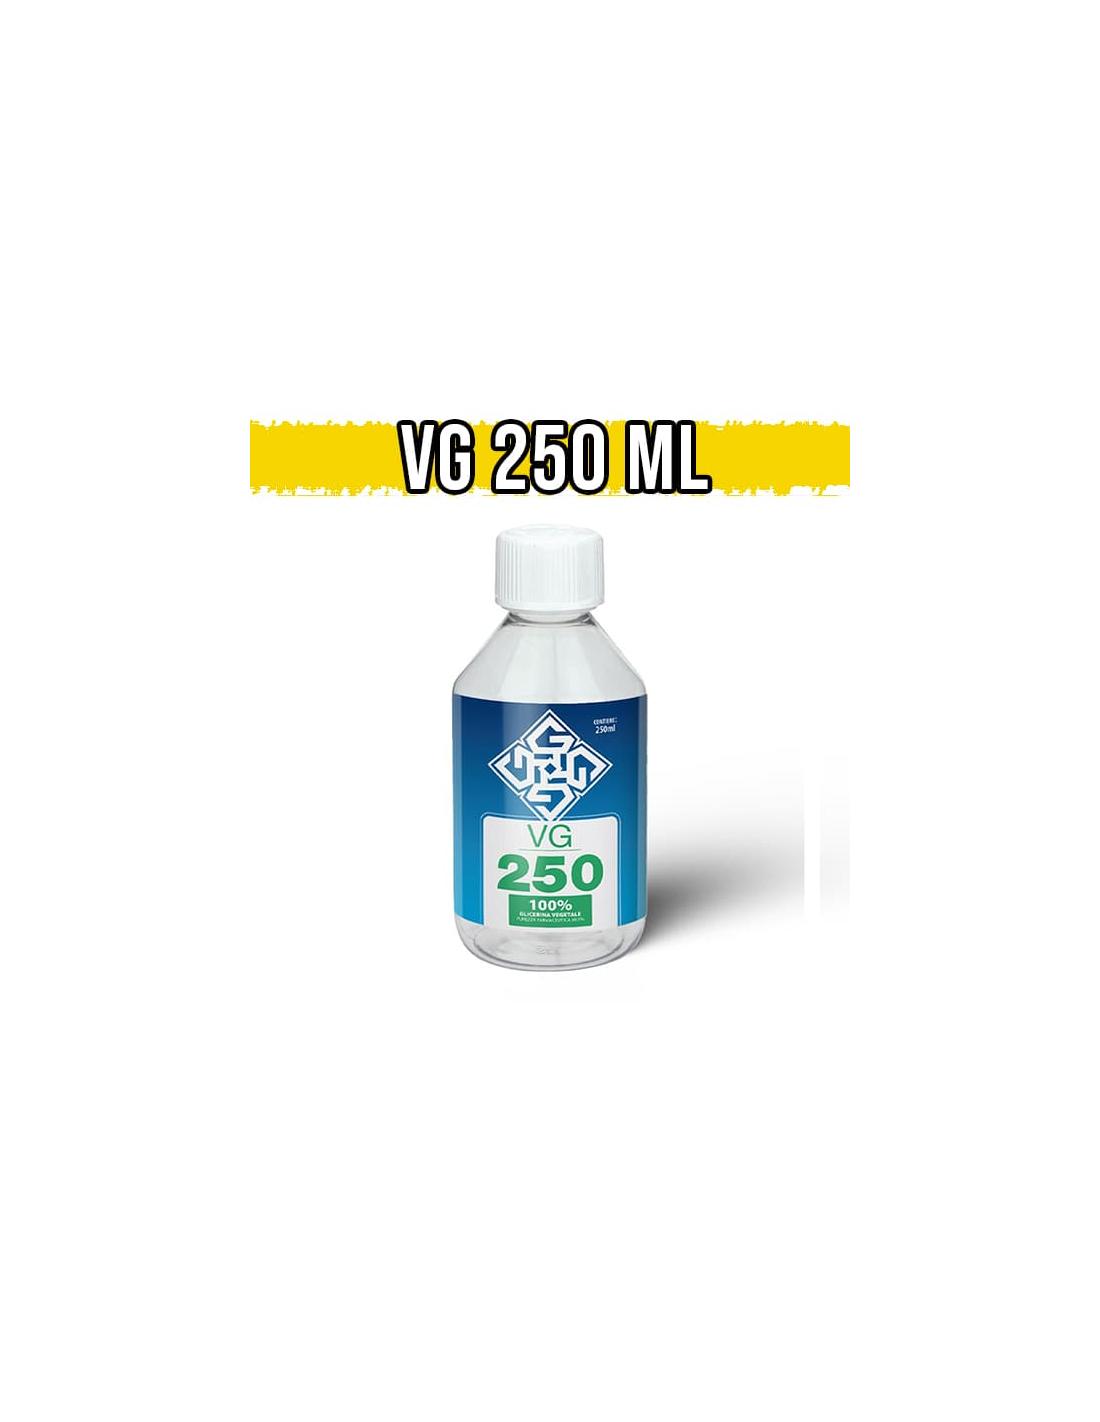 glowell glicerina vegetale 250ml full vg